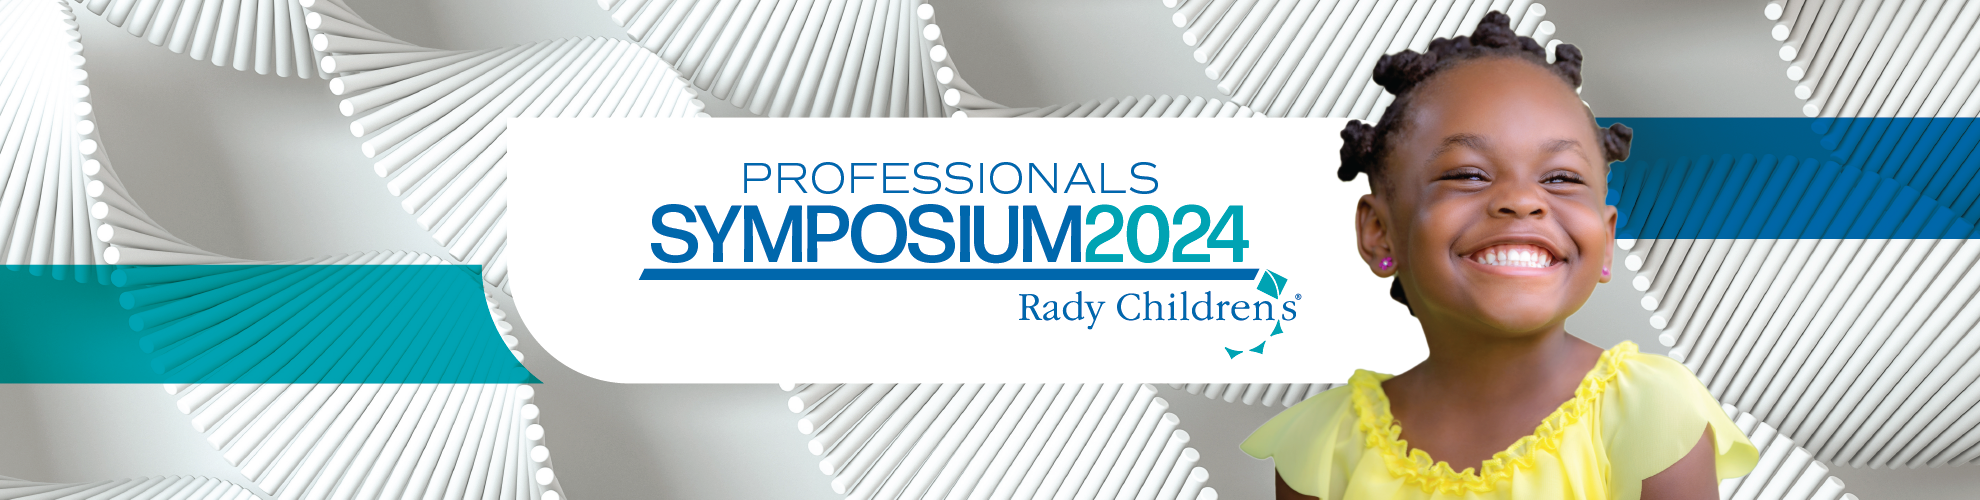 Professionals Symposium 2024 header